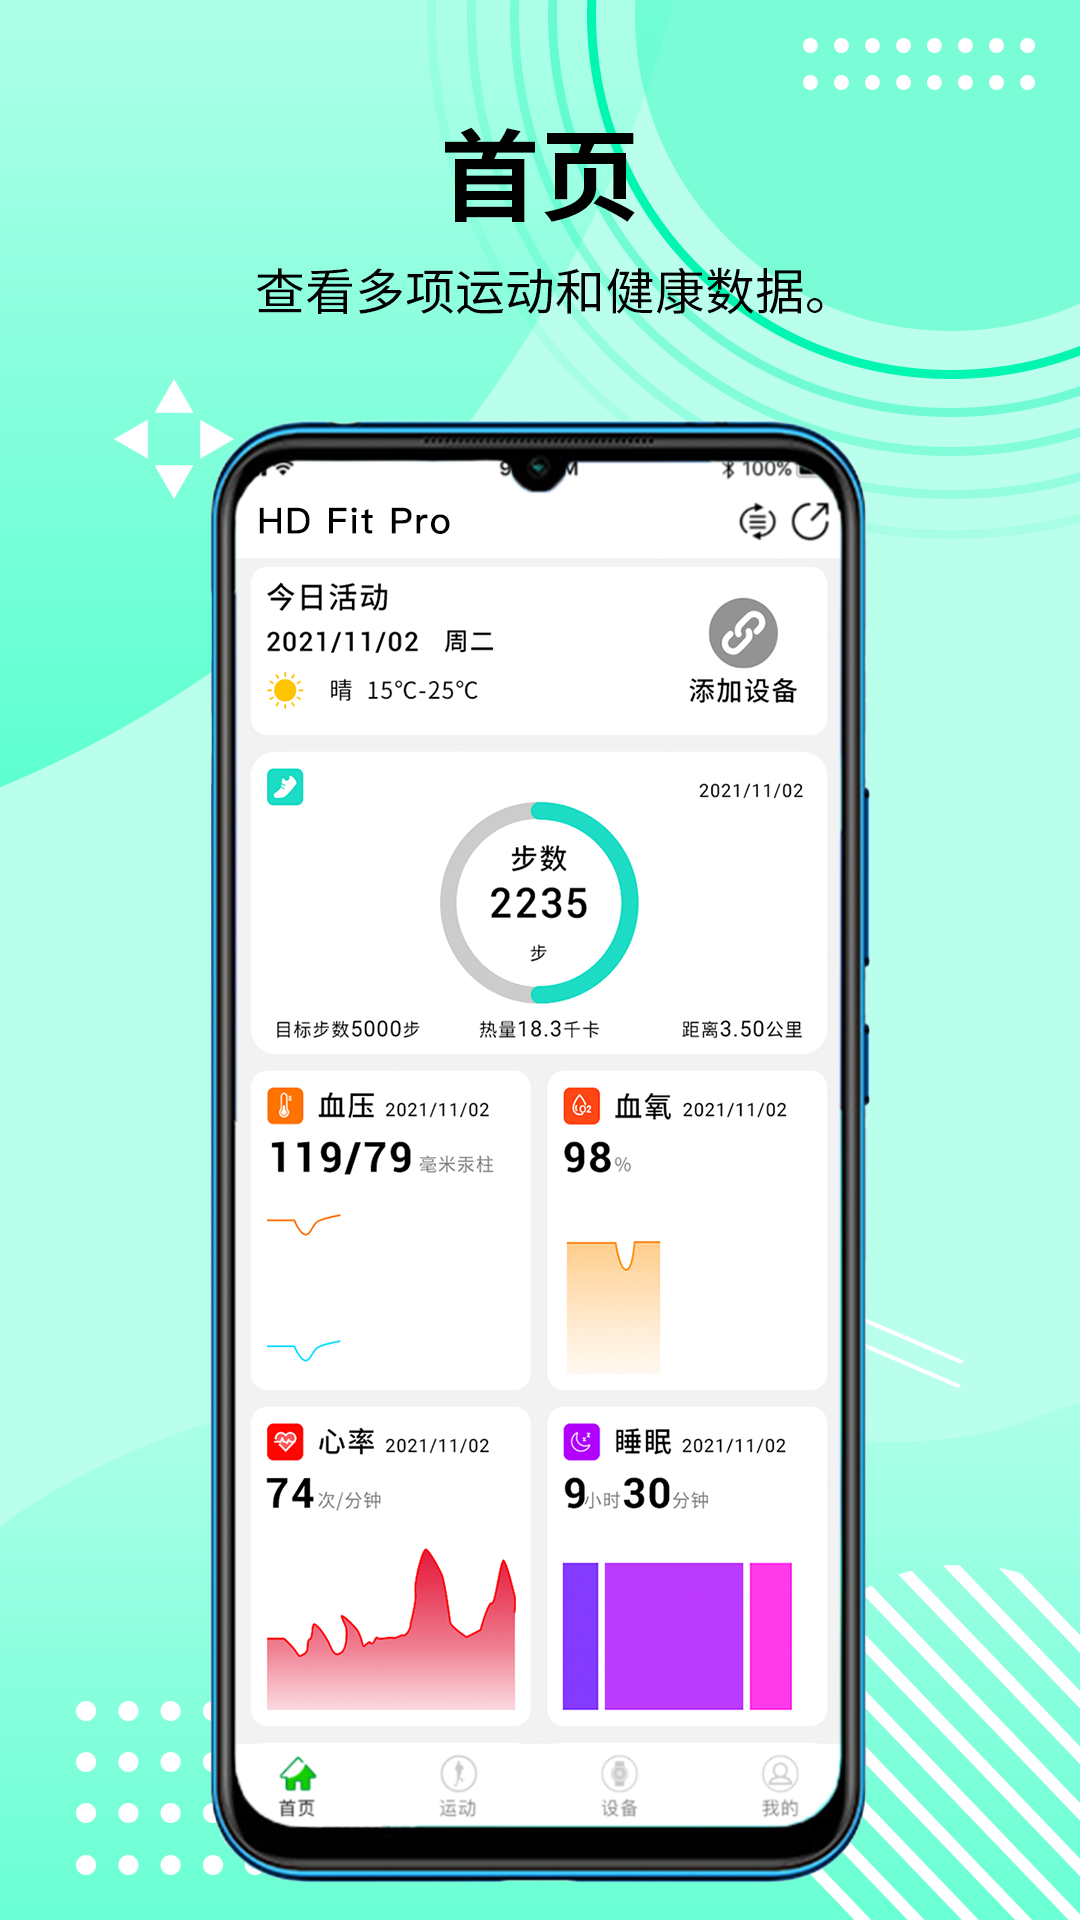 HD Fit Pro智能健康v1.1.107